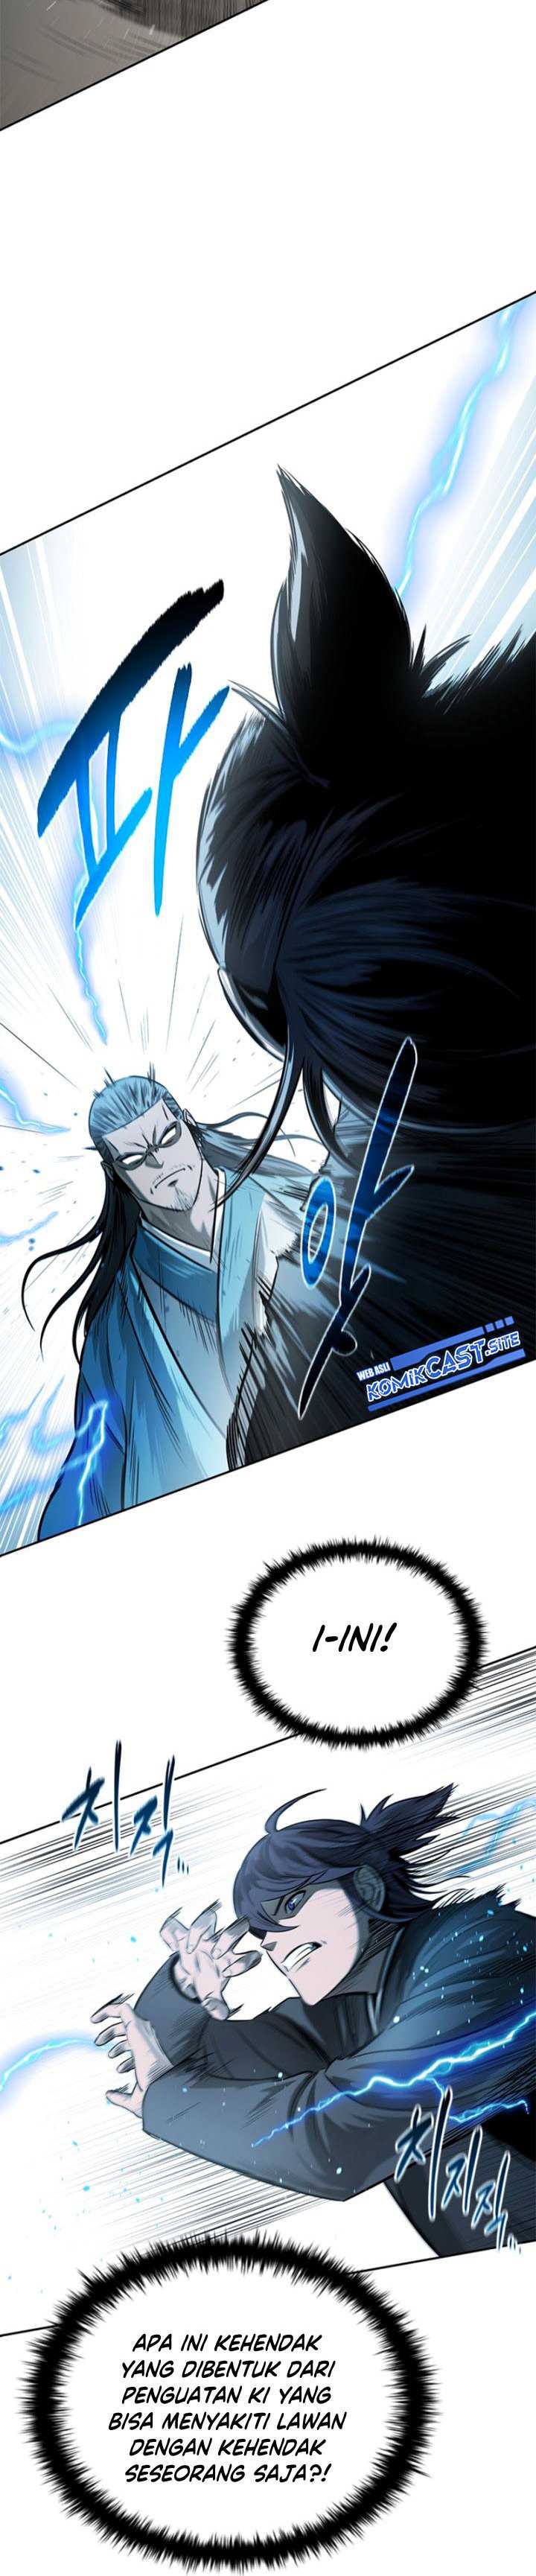 Moon-Shadow Sword Emperor Chapter 10